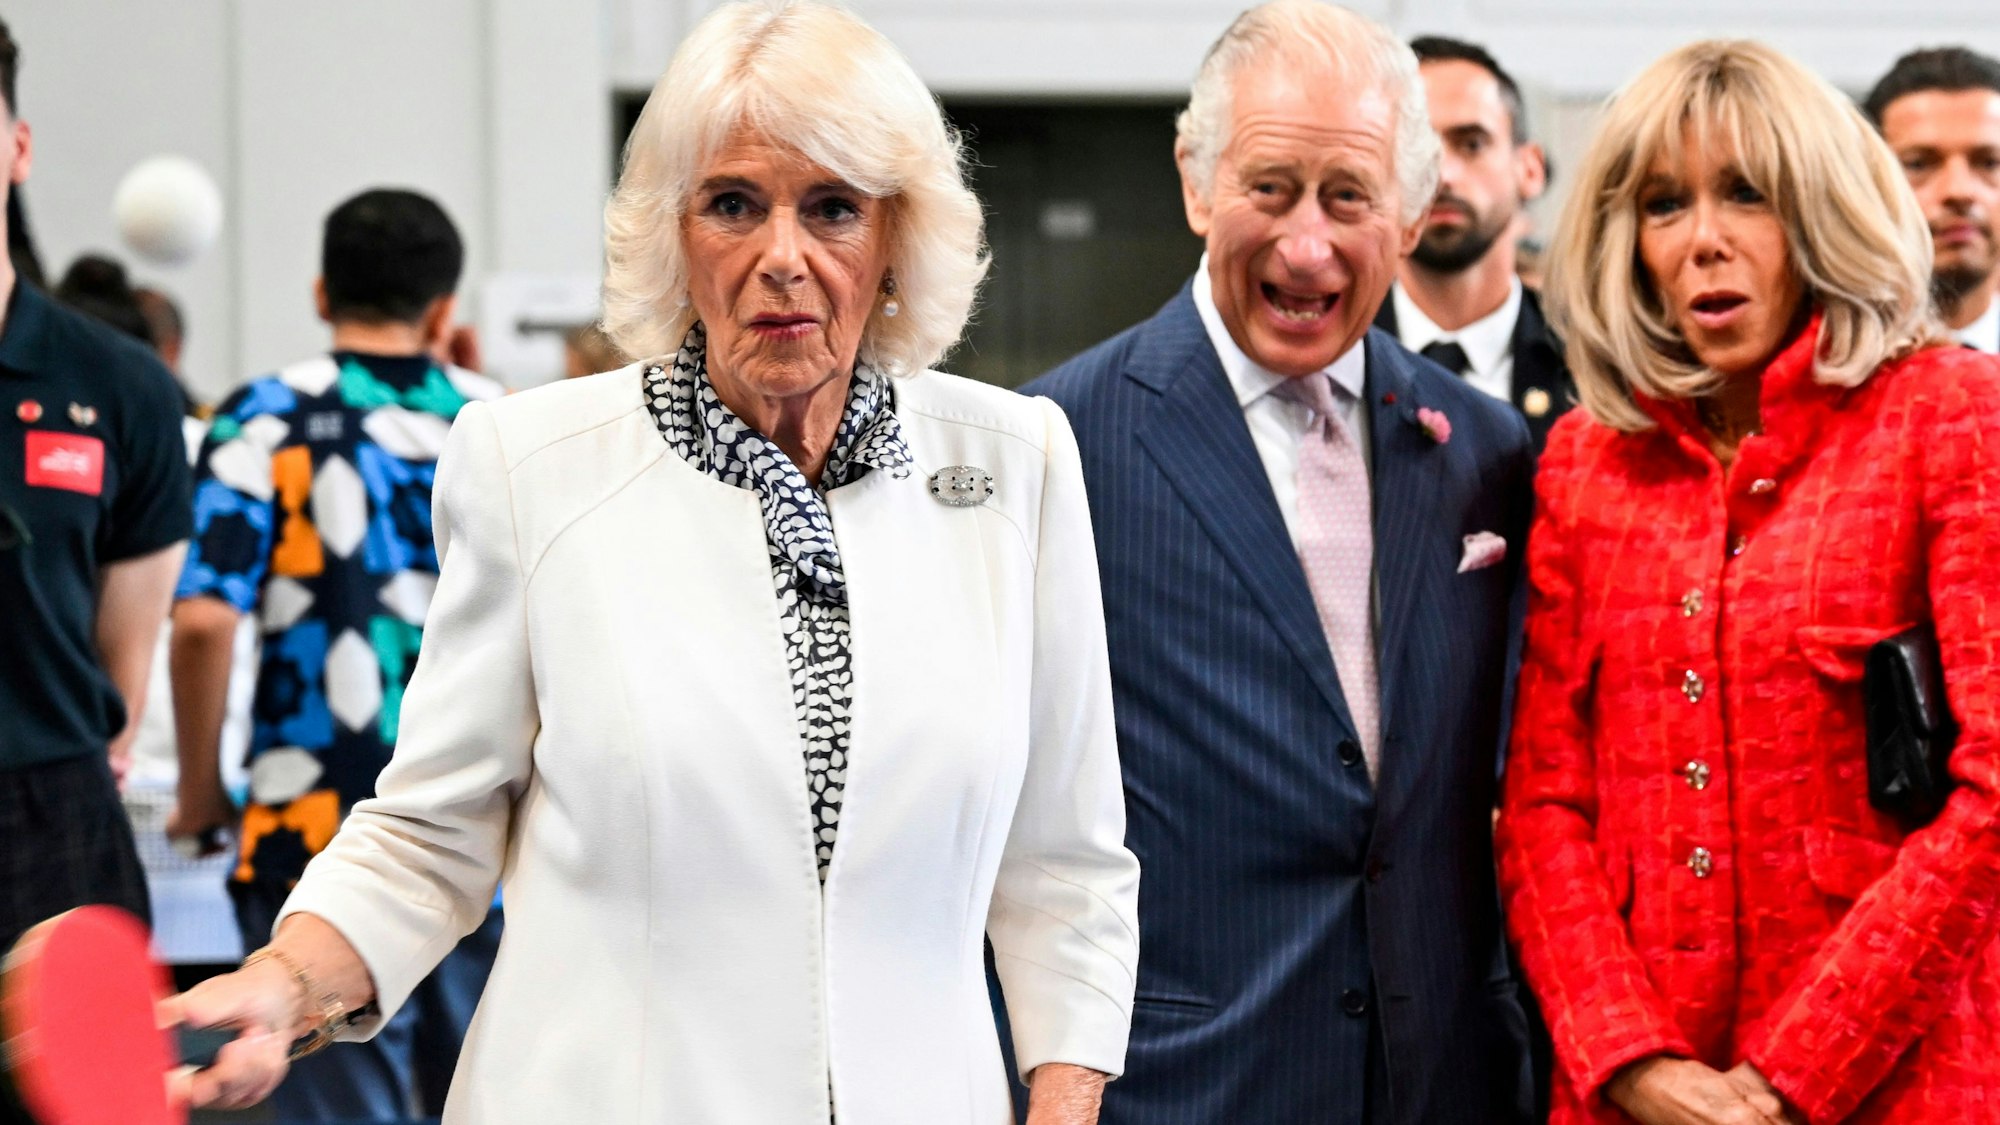 Königin Camilla (l) von Großbritannien spielt im Rahmen des Besuchs in einer Sporthalle Tischtennis, während König Charles III. und Brigitte Macron, Ehefrau des Präsidenten von Frankreich, zuschauen.